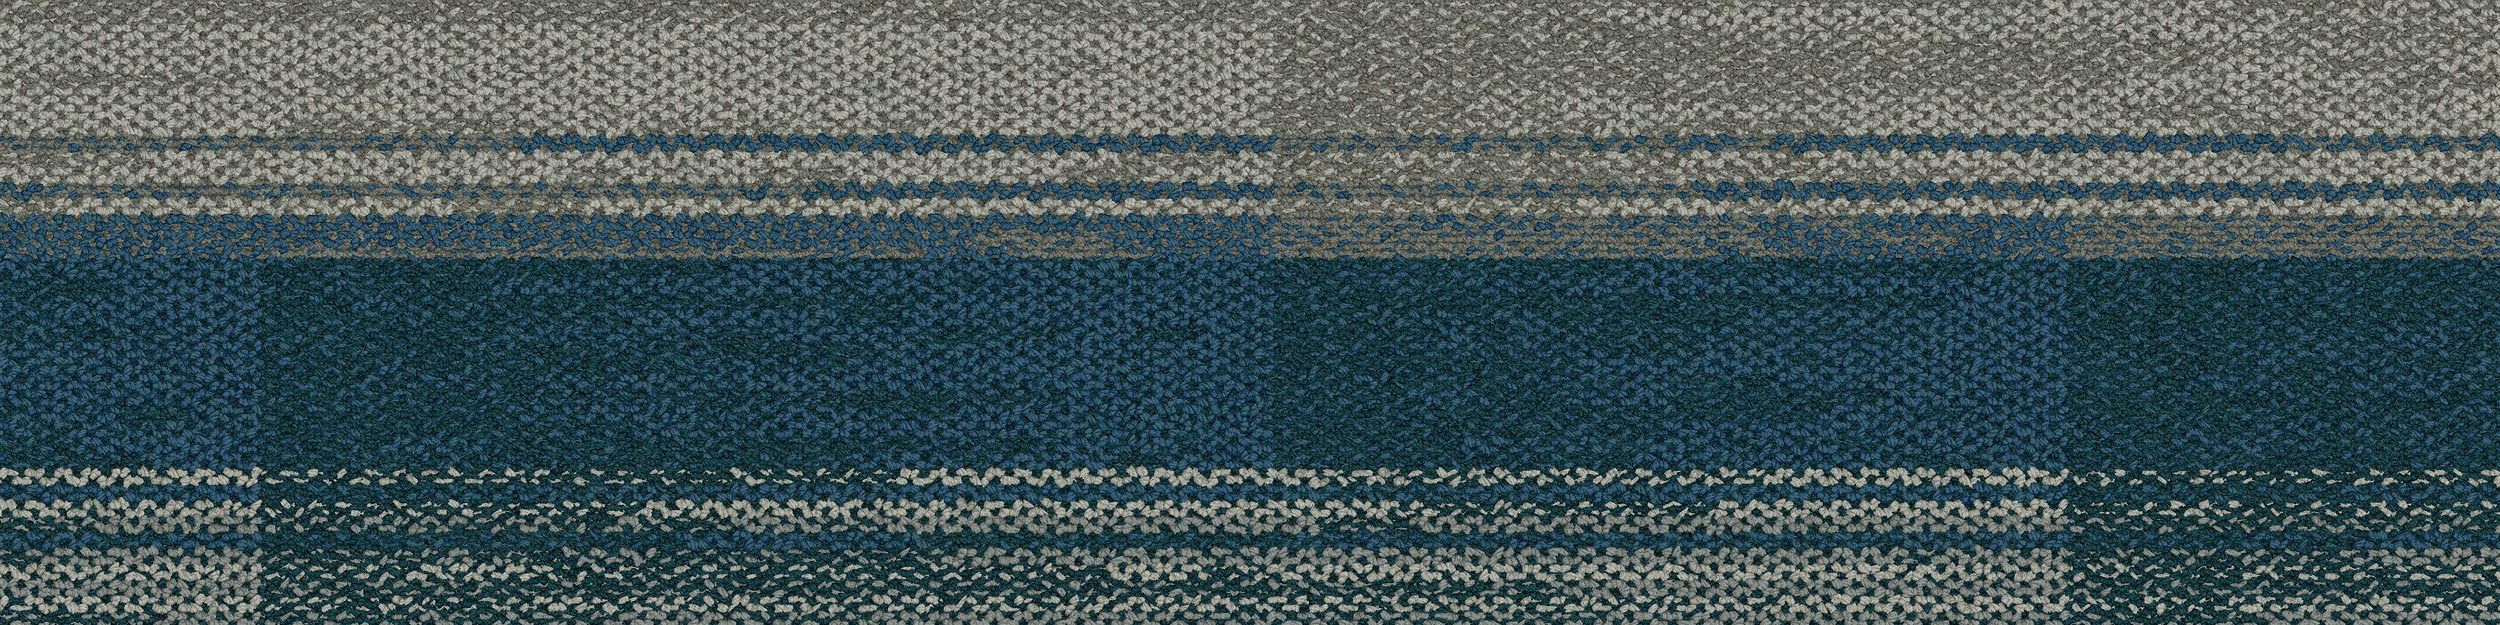 AE315 Carpet Tile In Mist/Aquamarine image number 2